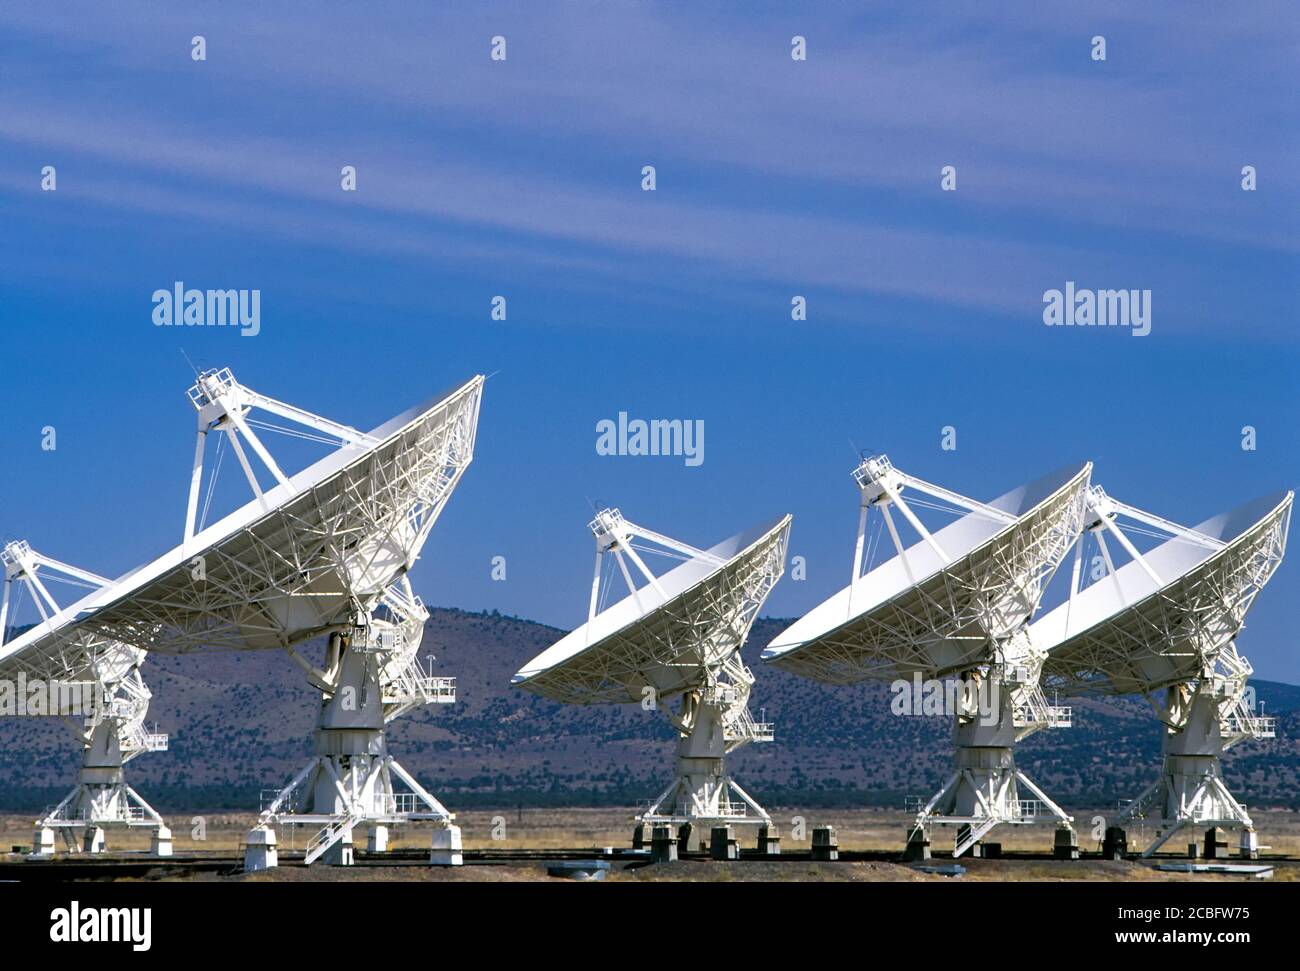 Radio telescopes, National Radio Astronomy Observatory (NRAO) Very Large Array (VLA), near Magdalena, New Mexico USA Stock Photo